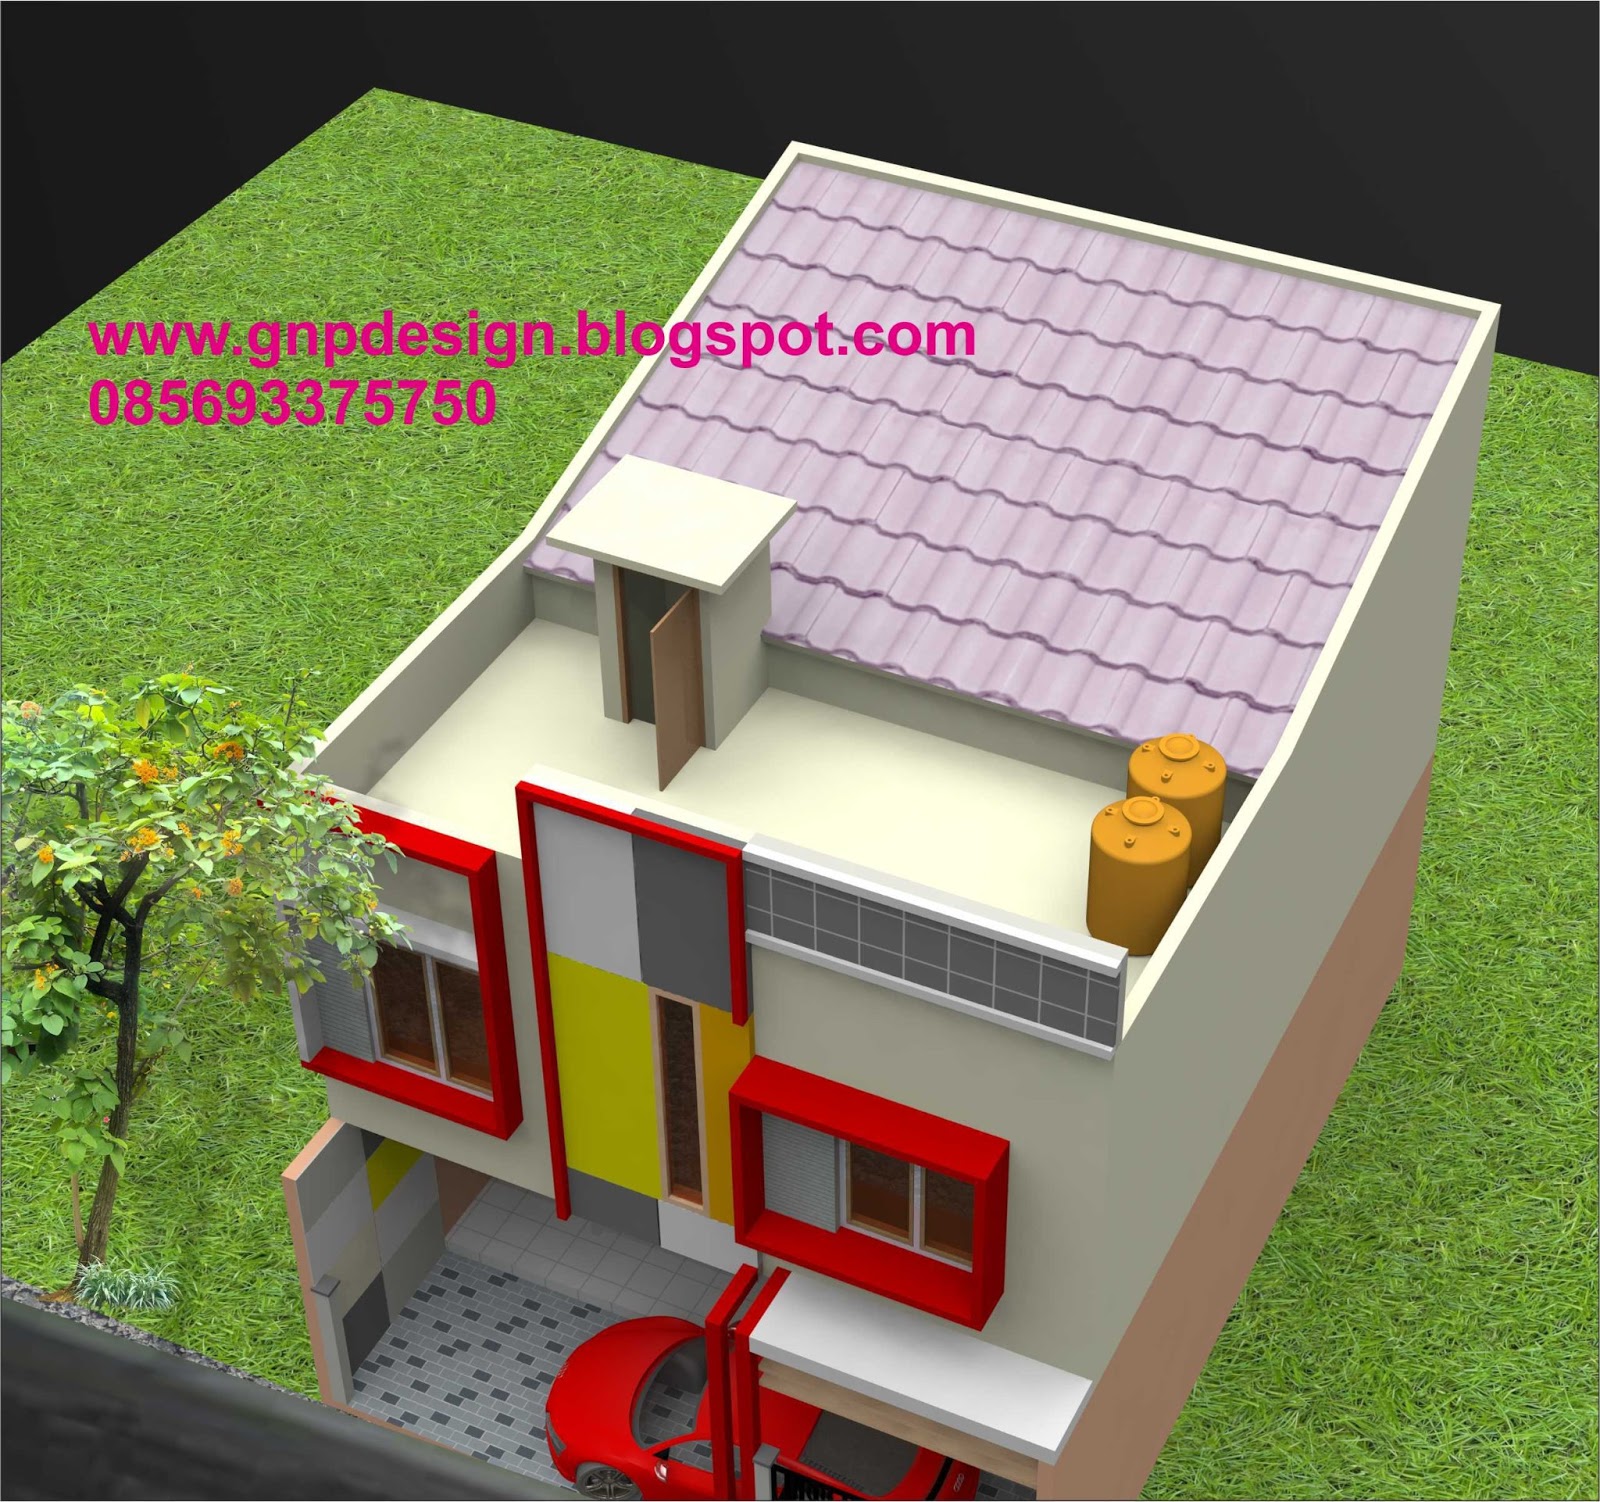 Gnp design: Design Rumah Minimalis buat Kontrakan 2 Lantai